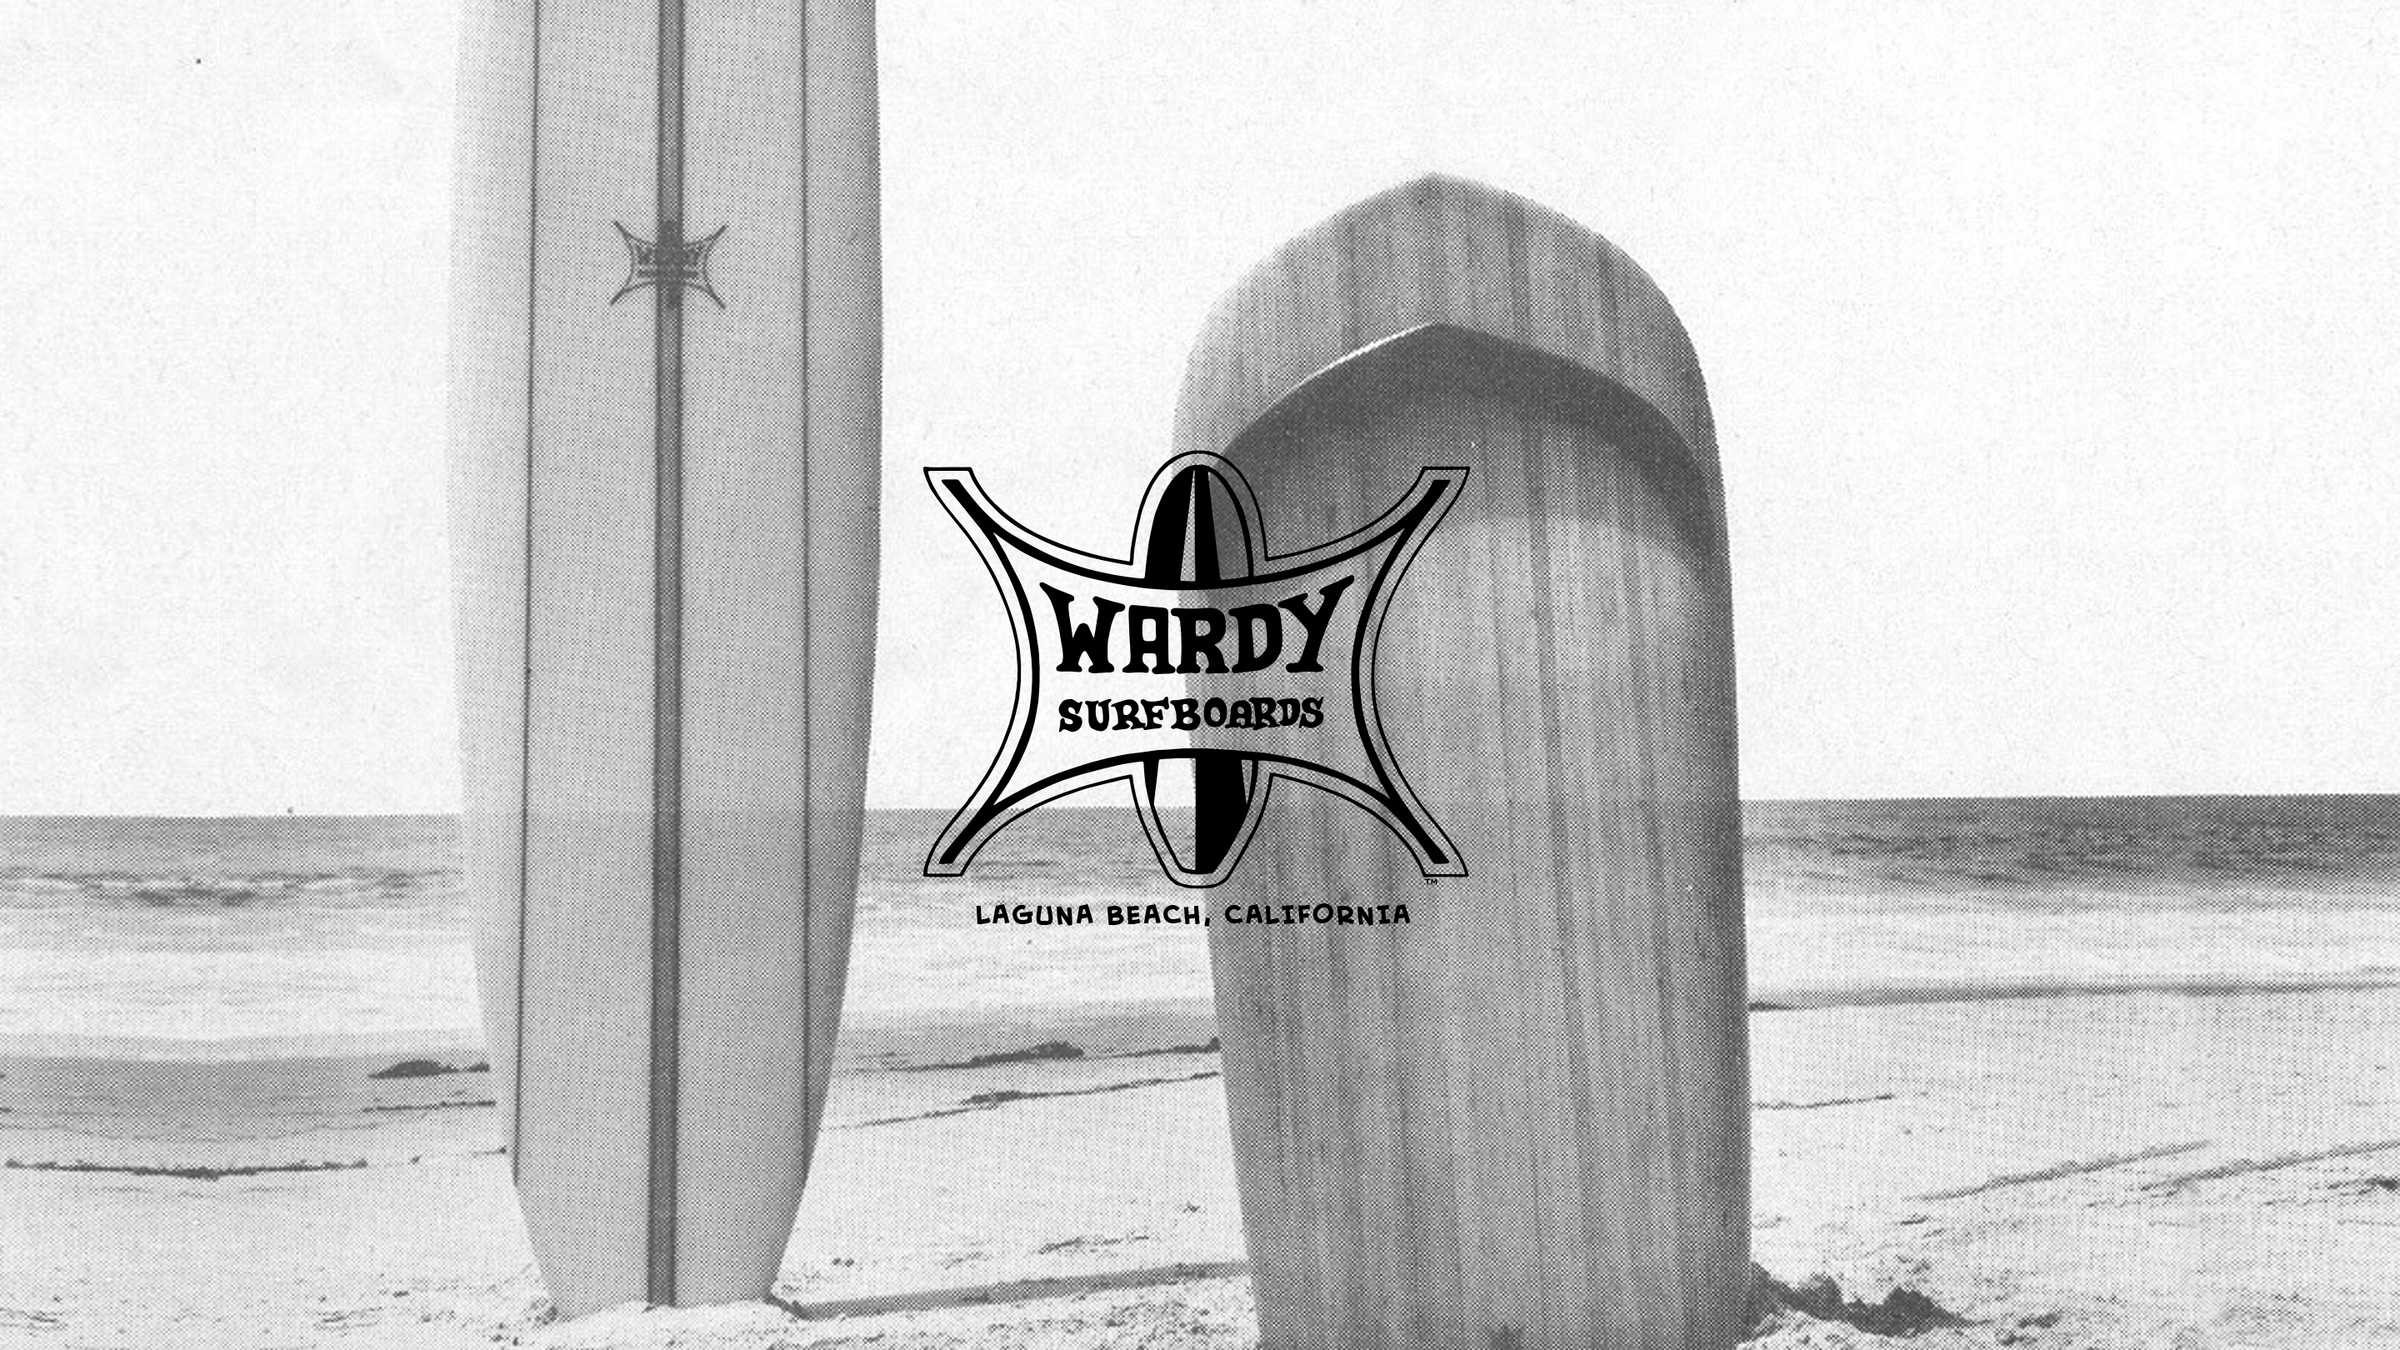 Wardy Surfboards